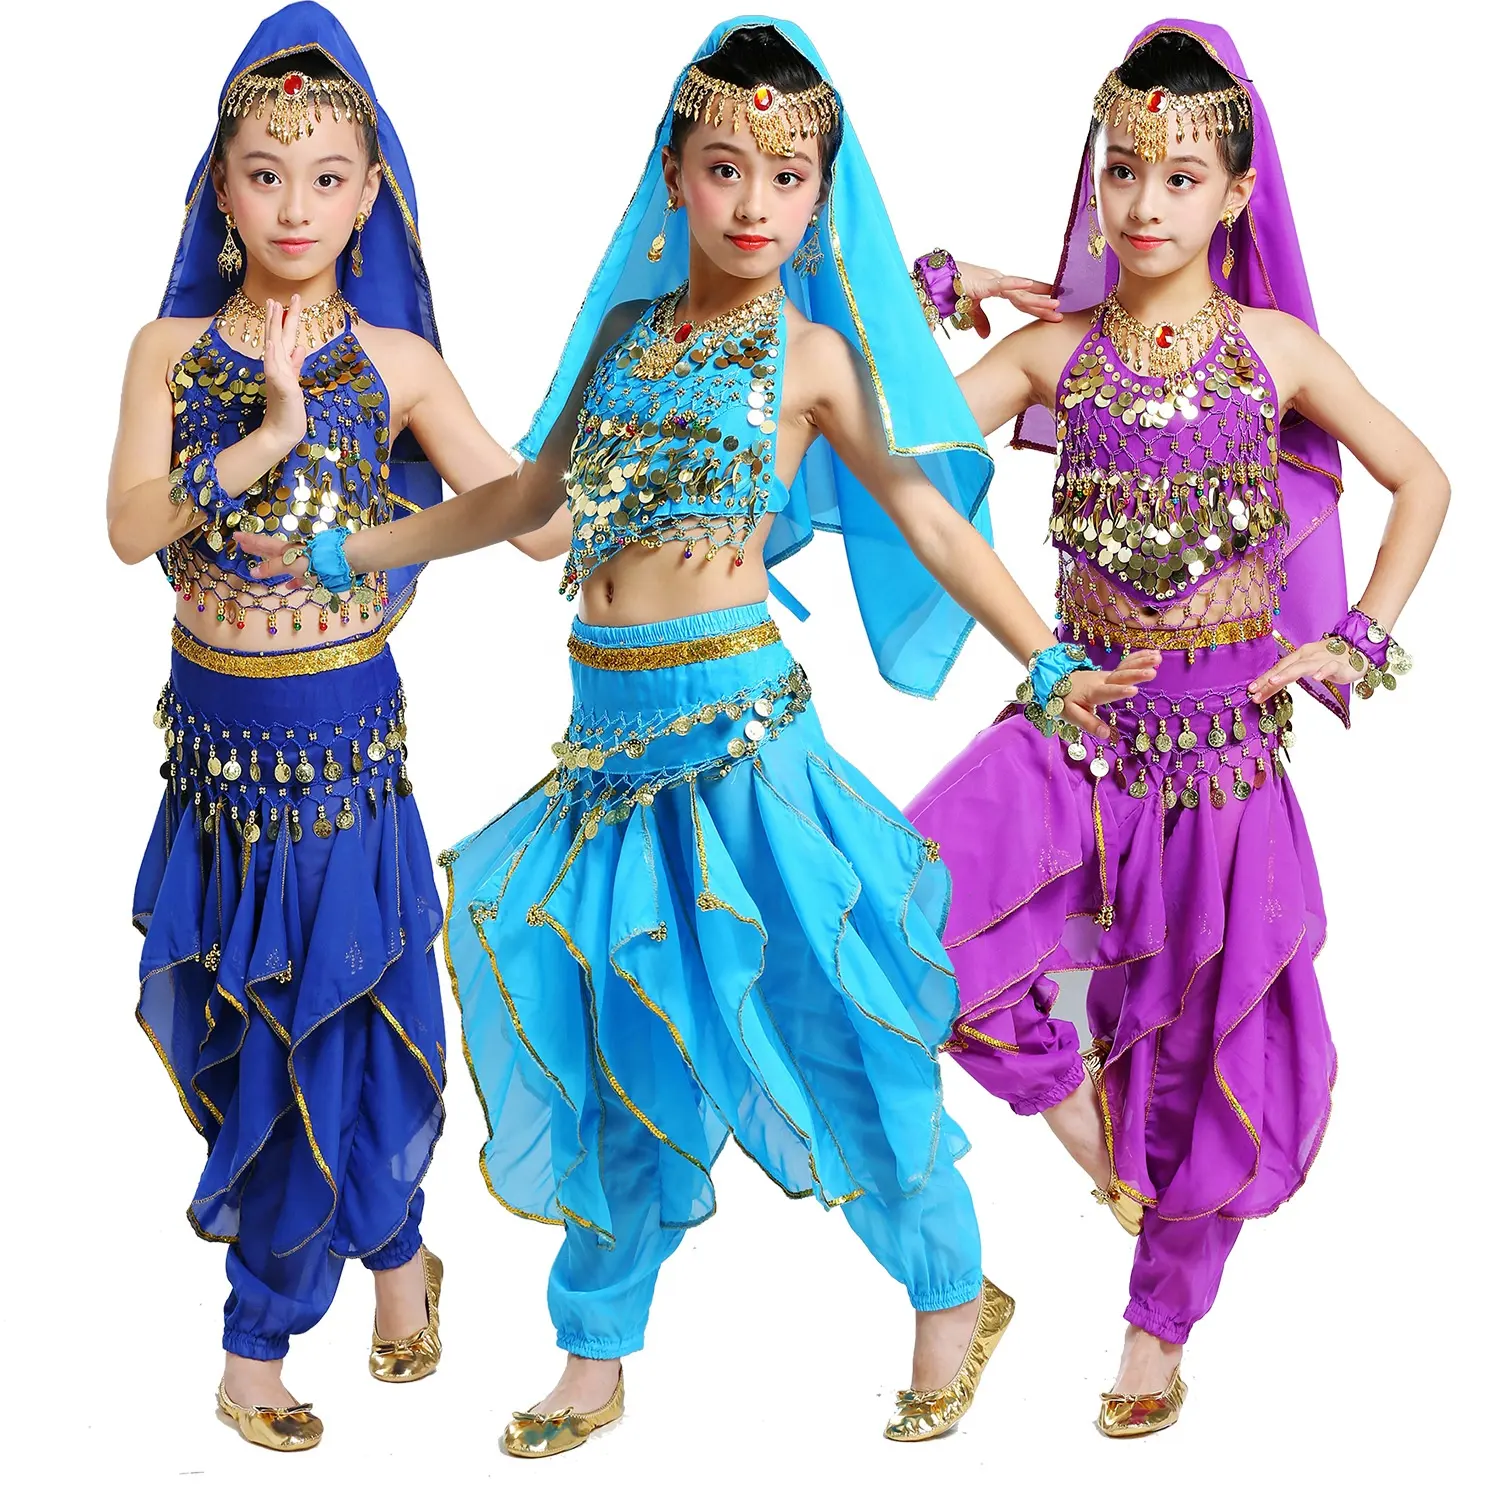 Bambini principessa ragazza indiana danza del ventre Costume Cosplay ornamenti Bollywood